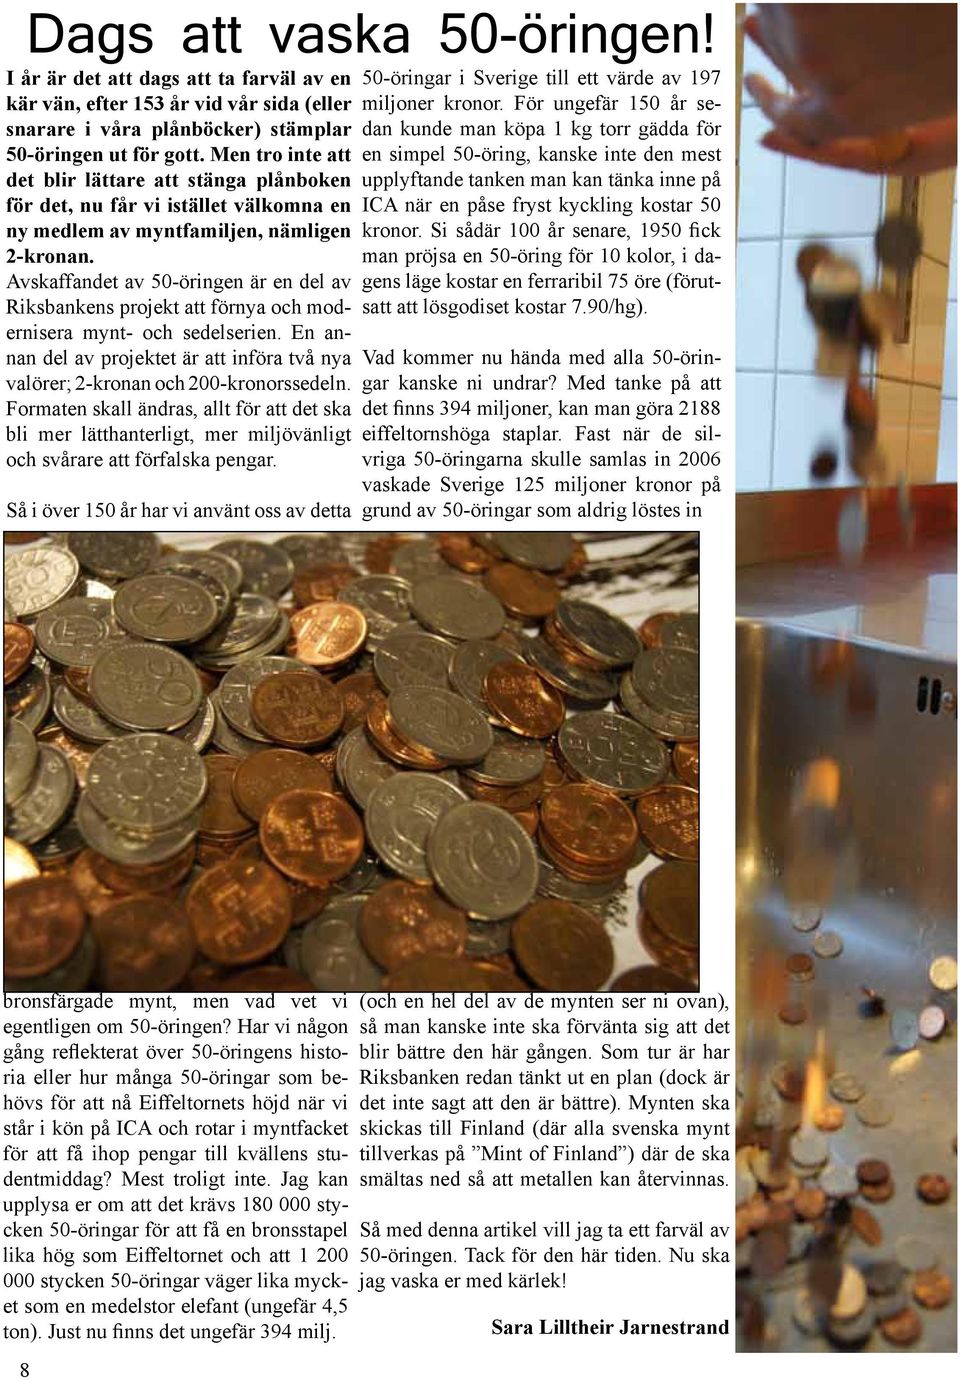 Avskaffandet av 50-öringen är en del av Riksbankens projekt att förnya och modernisera mynt- och sedelserien. En annan del av projektet är att införa två nya valörer; 2-kronan och 200-kronorssedeln.